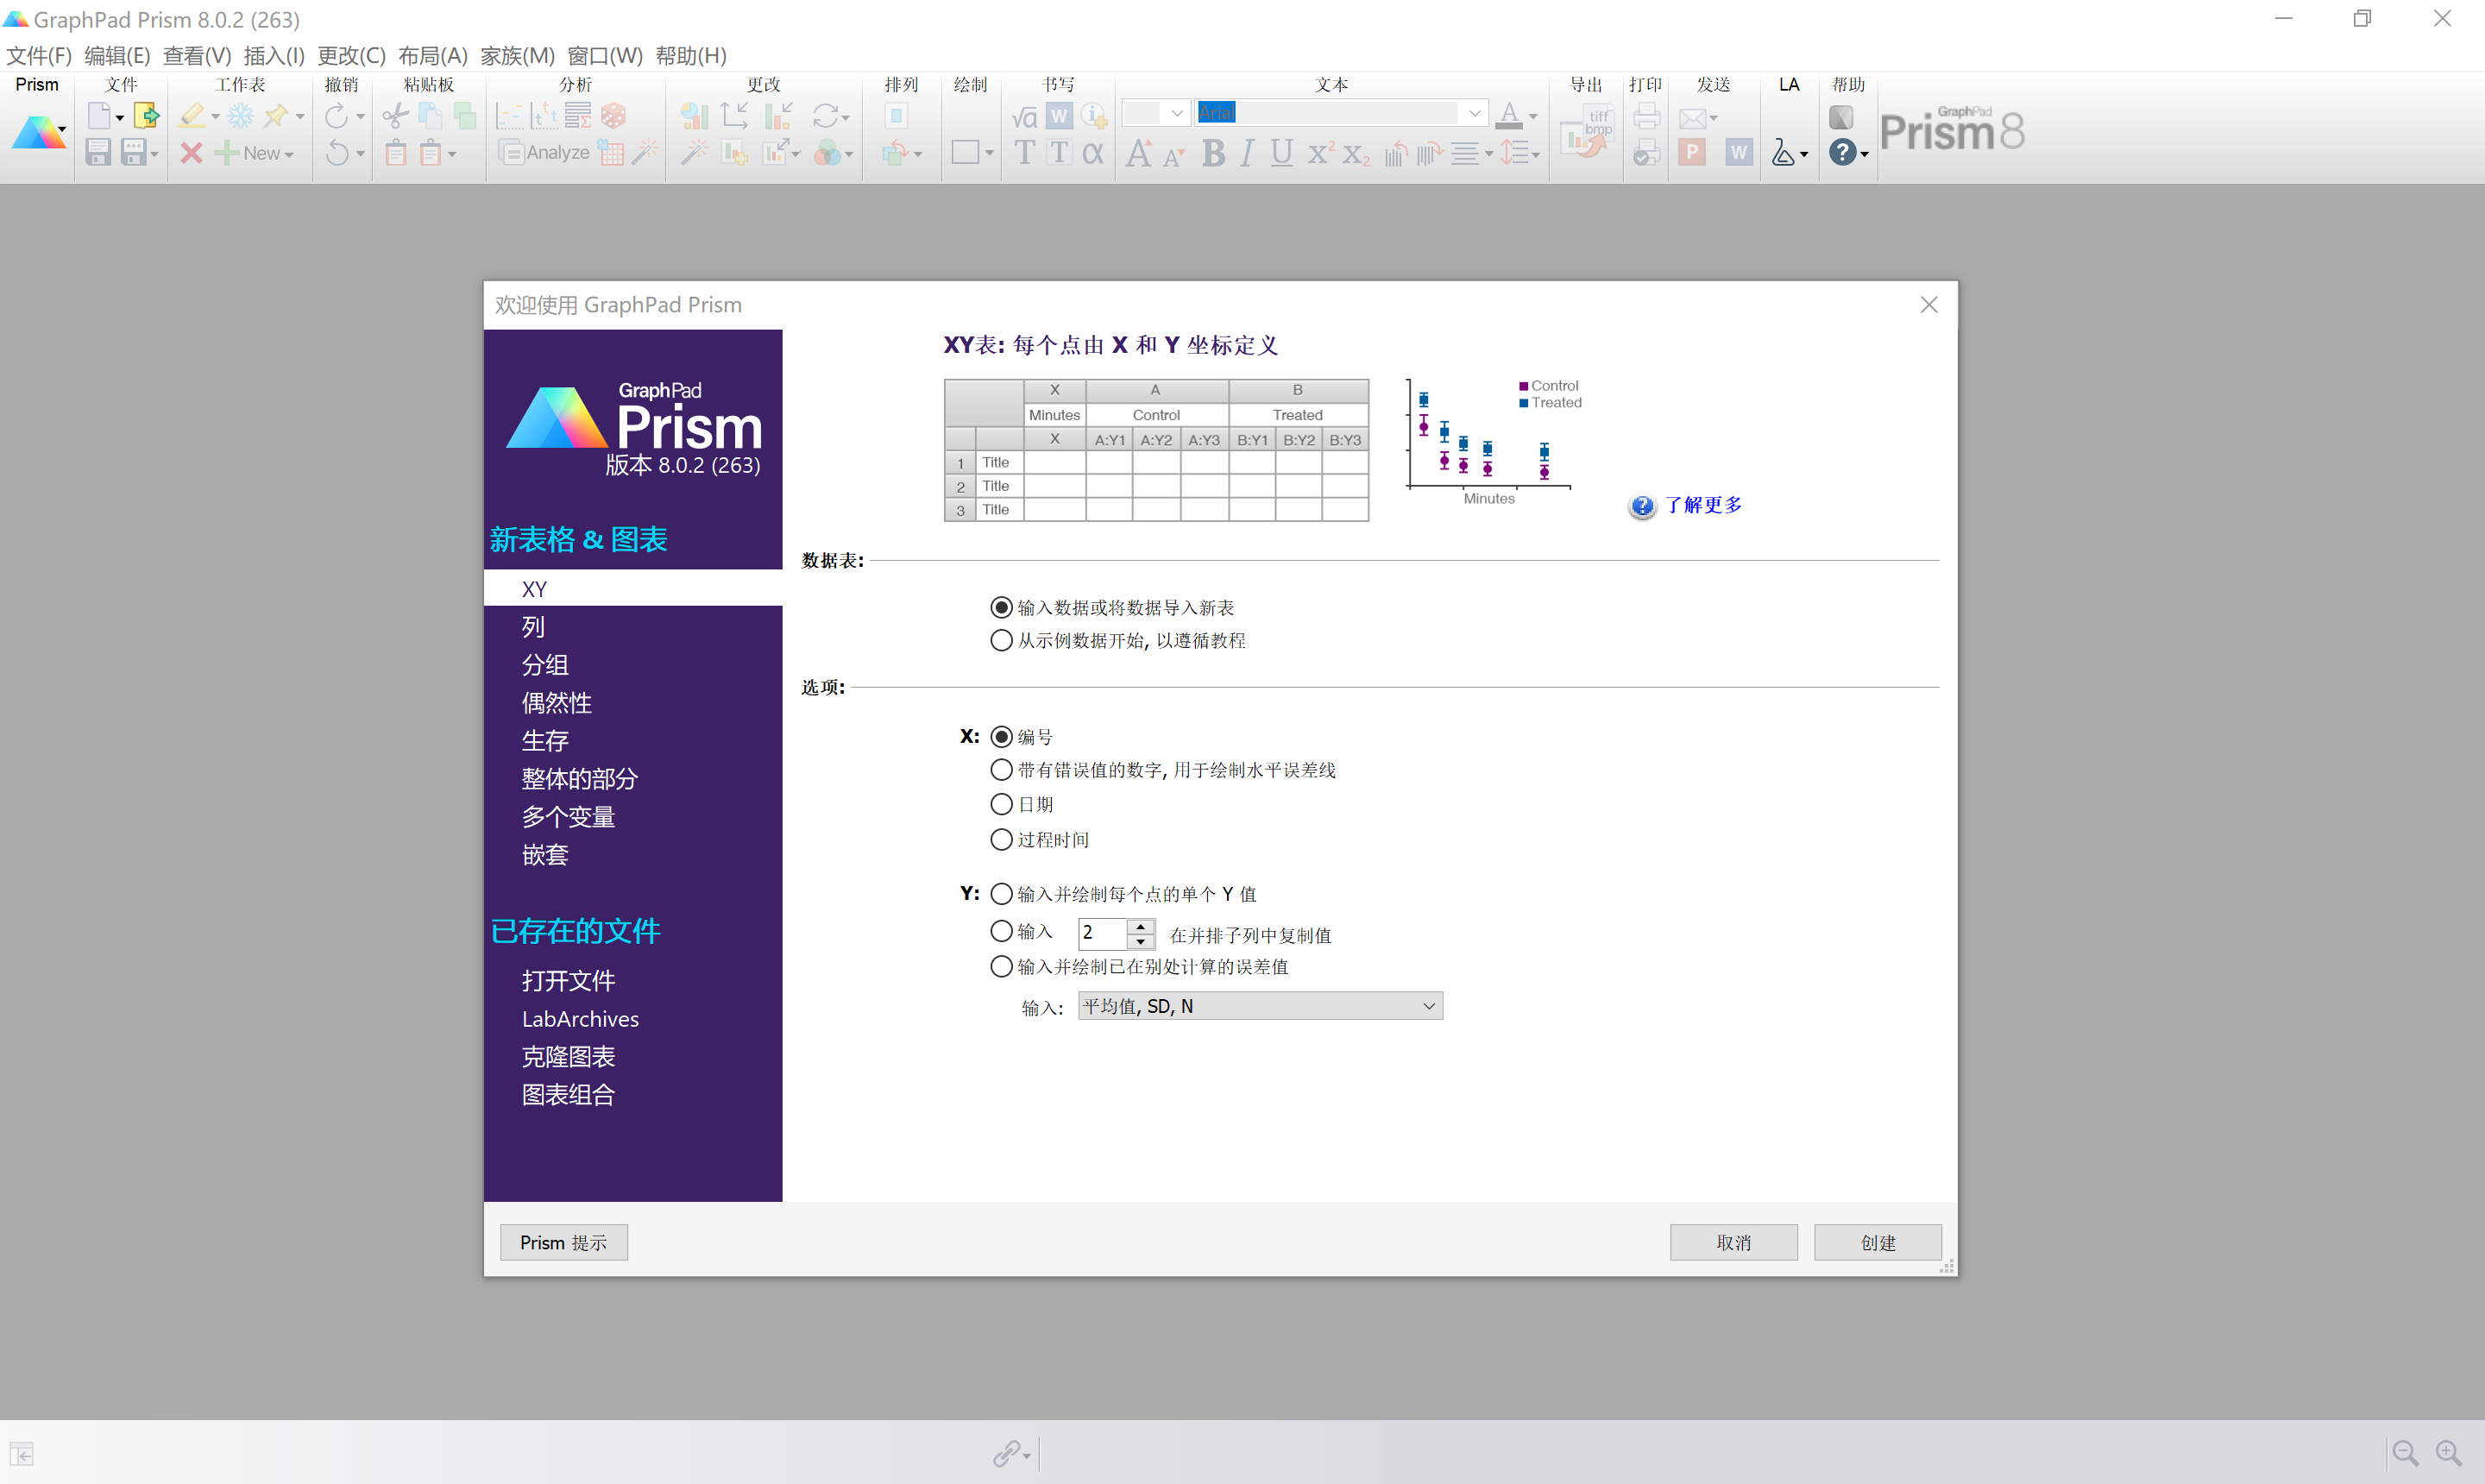 科学制图 GraphPad Prism 8.0.2.263 Windows x86 x64 简体中文落尘之木汉化